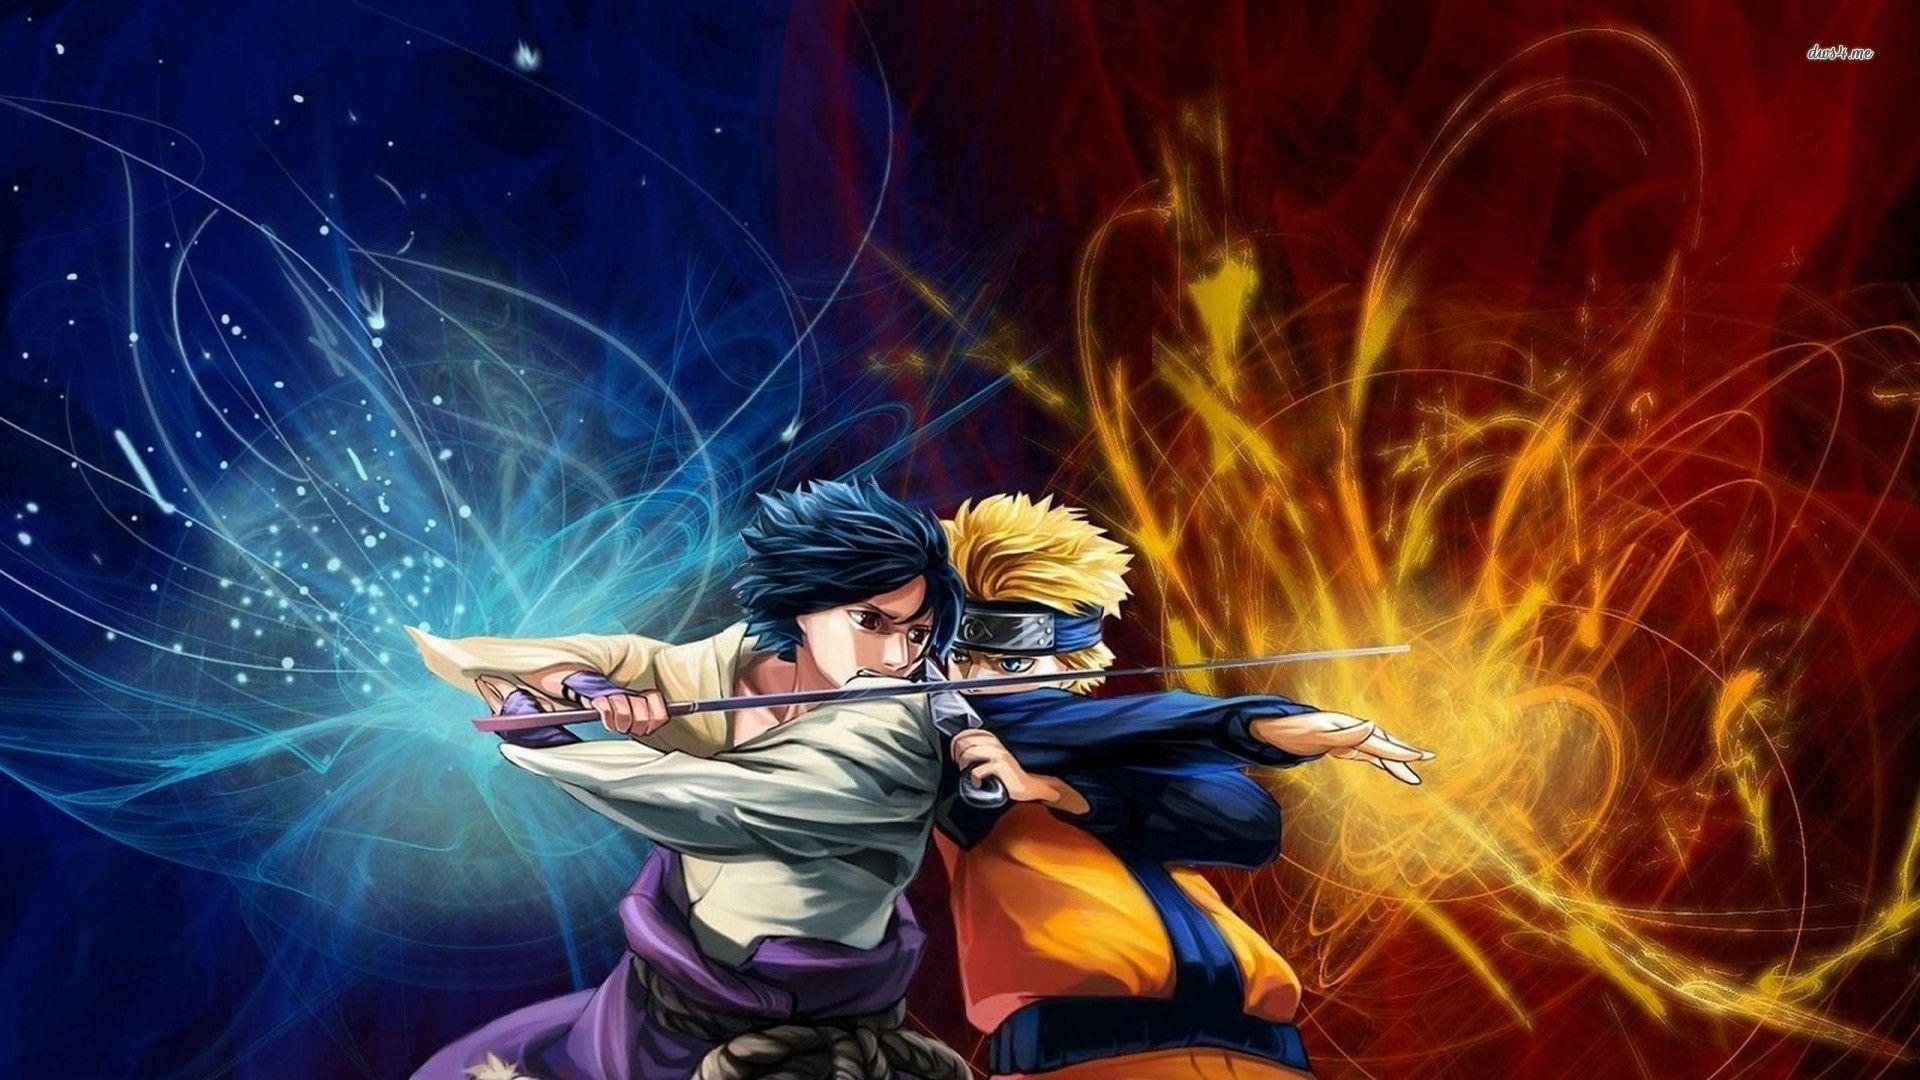 Naruto 694 Sasuke vs Naruto by Stingcunha